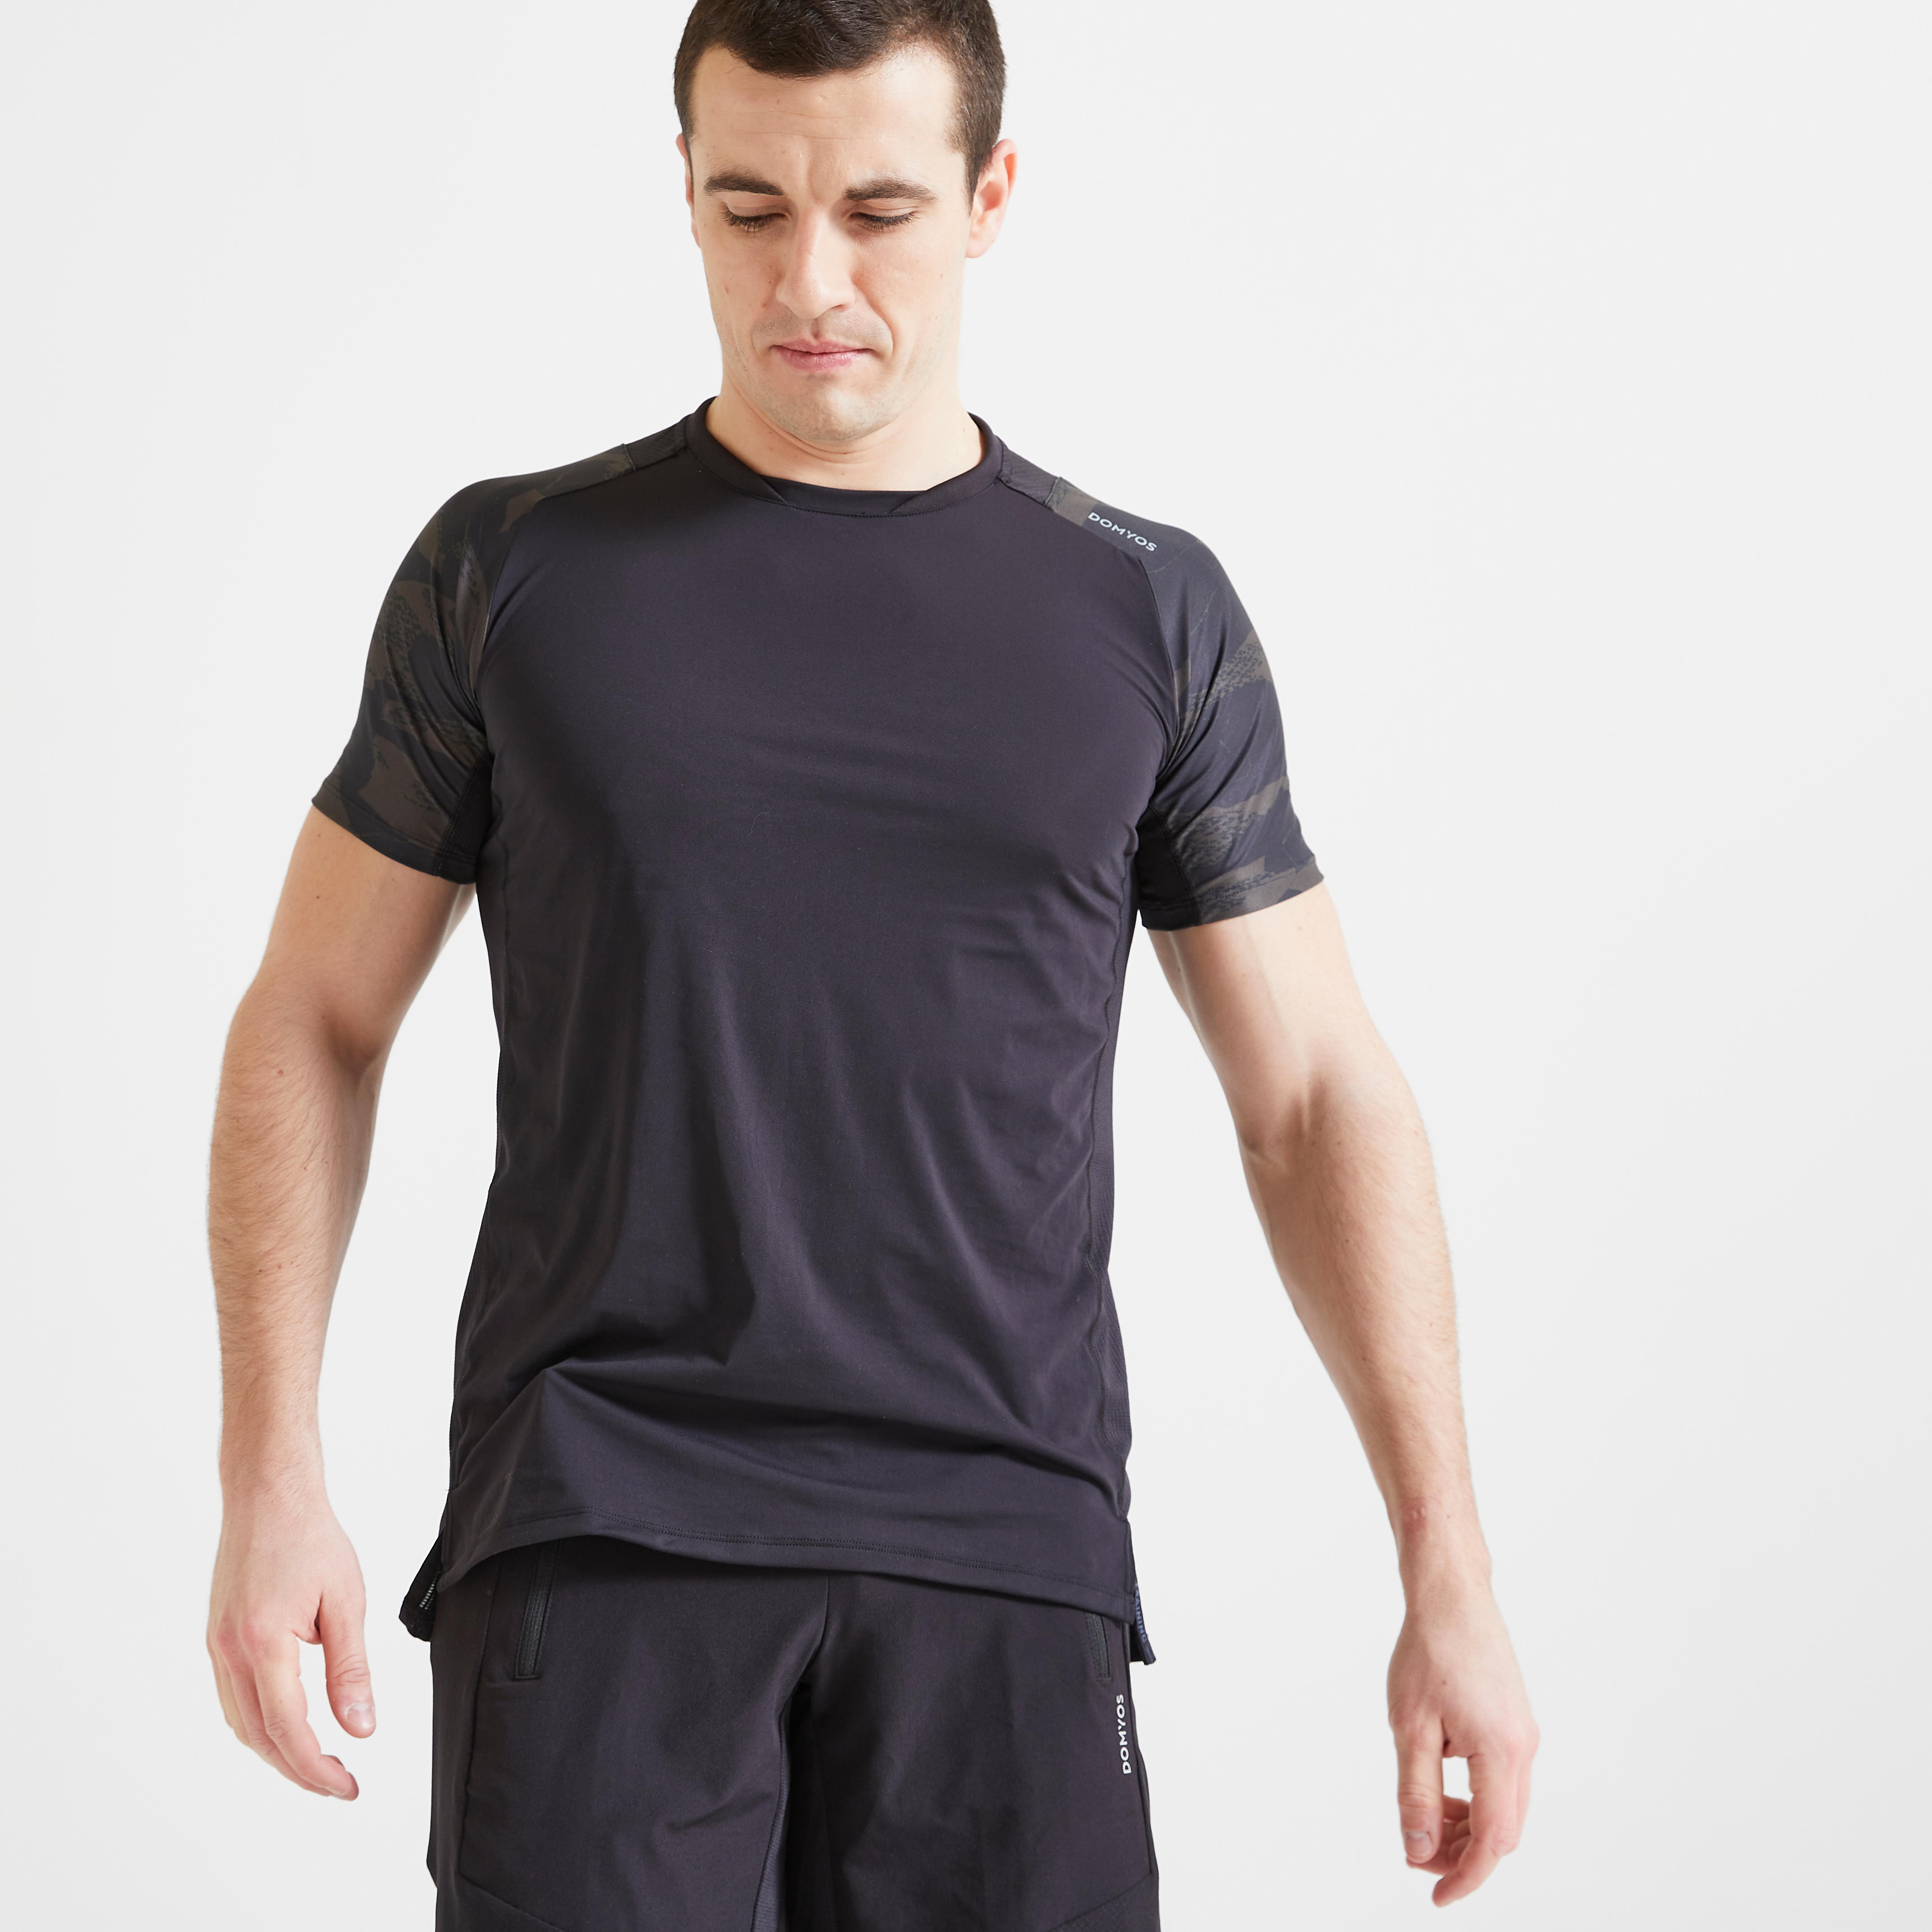 Men's Fitness Cardio Training T-Shirt 500 Camo DOMYOS - Decathlon